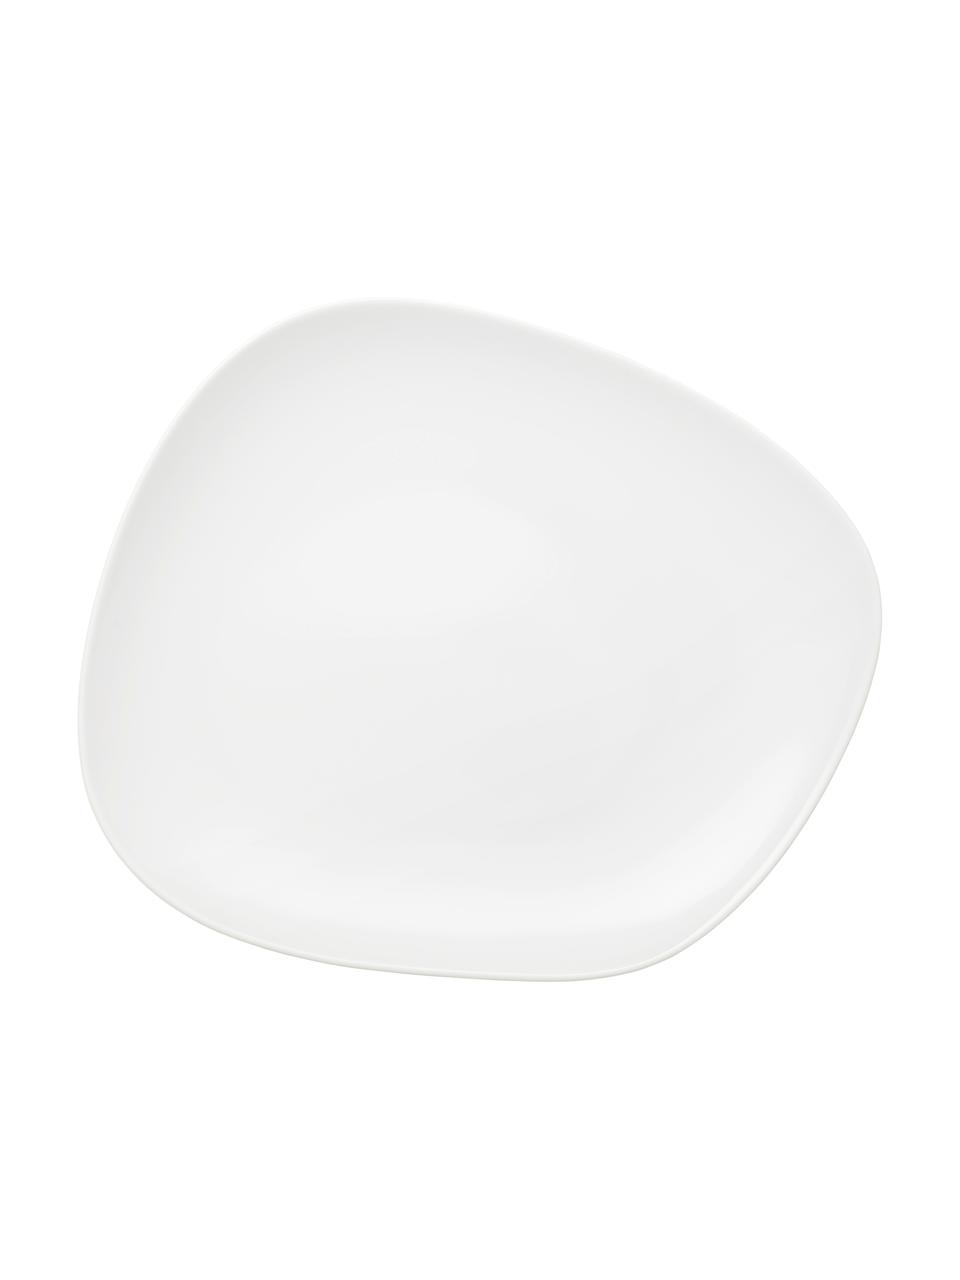 Porzellan Geschirr-Set Organic in Weiß, 4 Personen (12-tlg.), Porzellan, Weiß, Set mit verschiedenen Größen